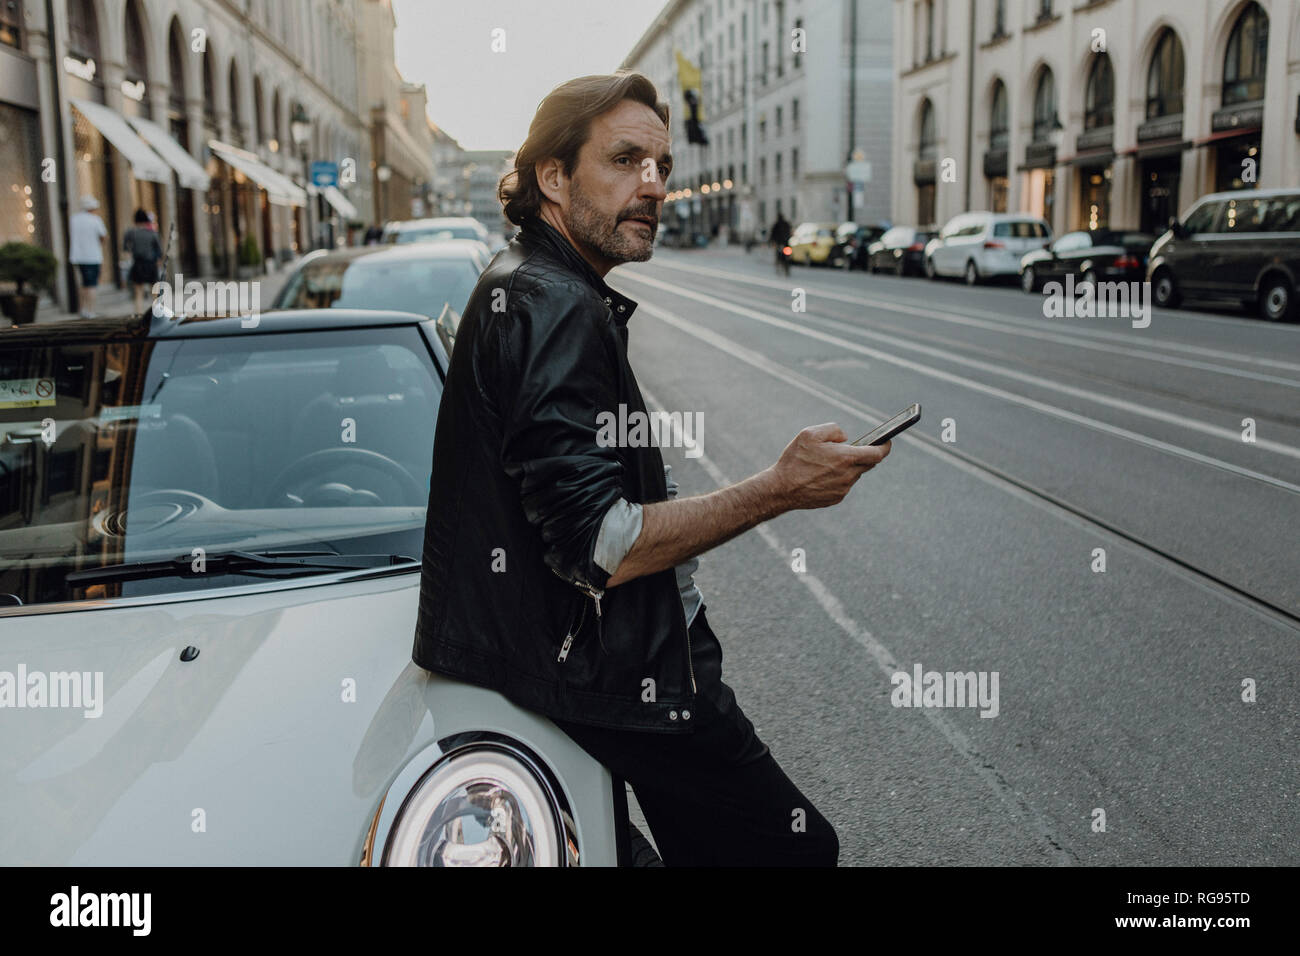 Reifer Mann lehnte sich auf dem Auto, Smartphone, München, Bayern, Deutschland Stockfoto